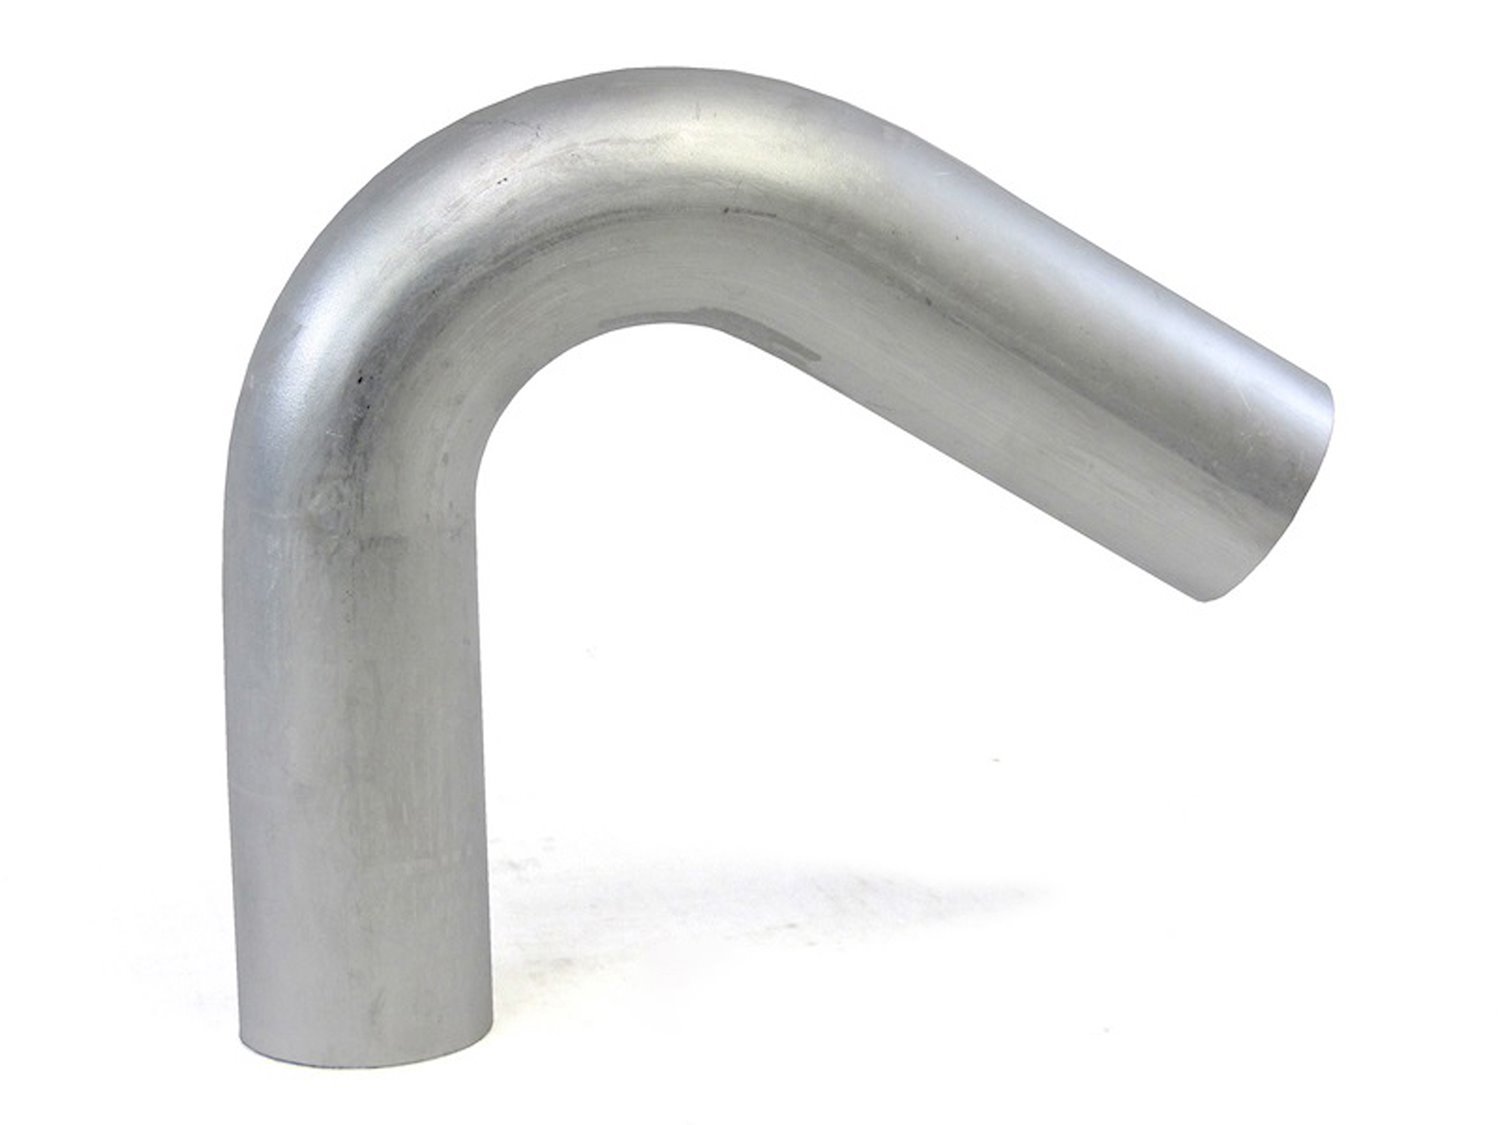 AT120-200-CLR-312 Aluminum Elbow Tube, 6061 Aluminum, 120-Degree Bend Elbow Tubing, 2 in. OD, Large Radius, 3 1/8 in. CLR